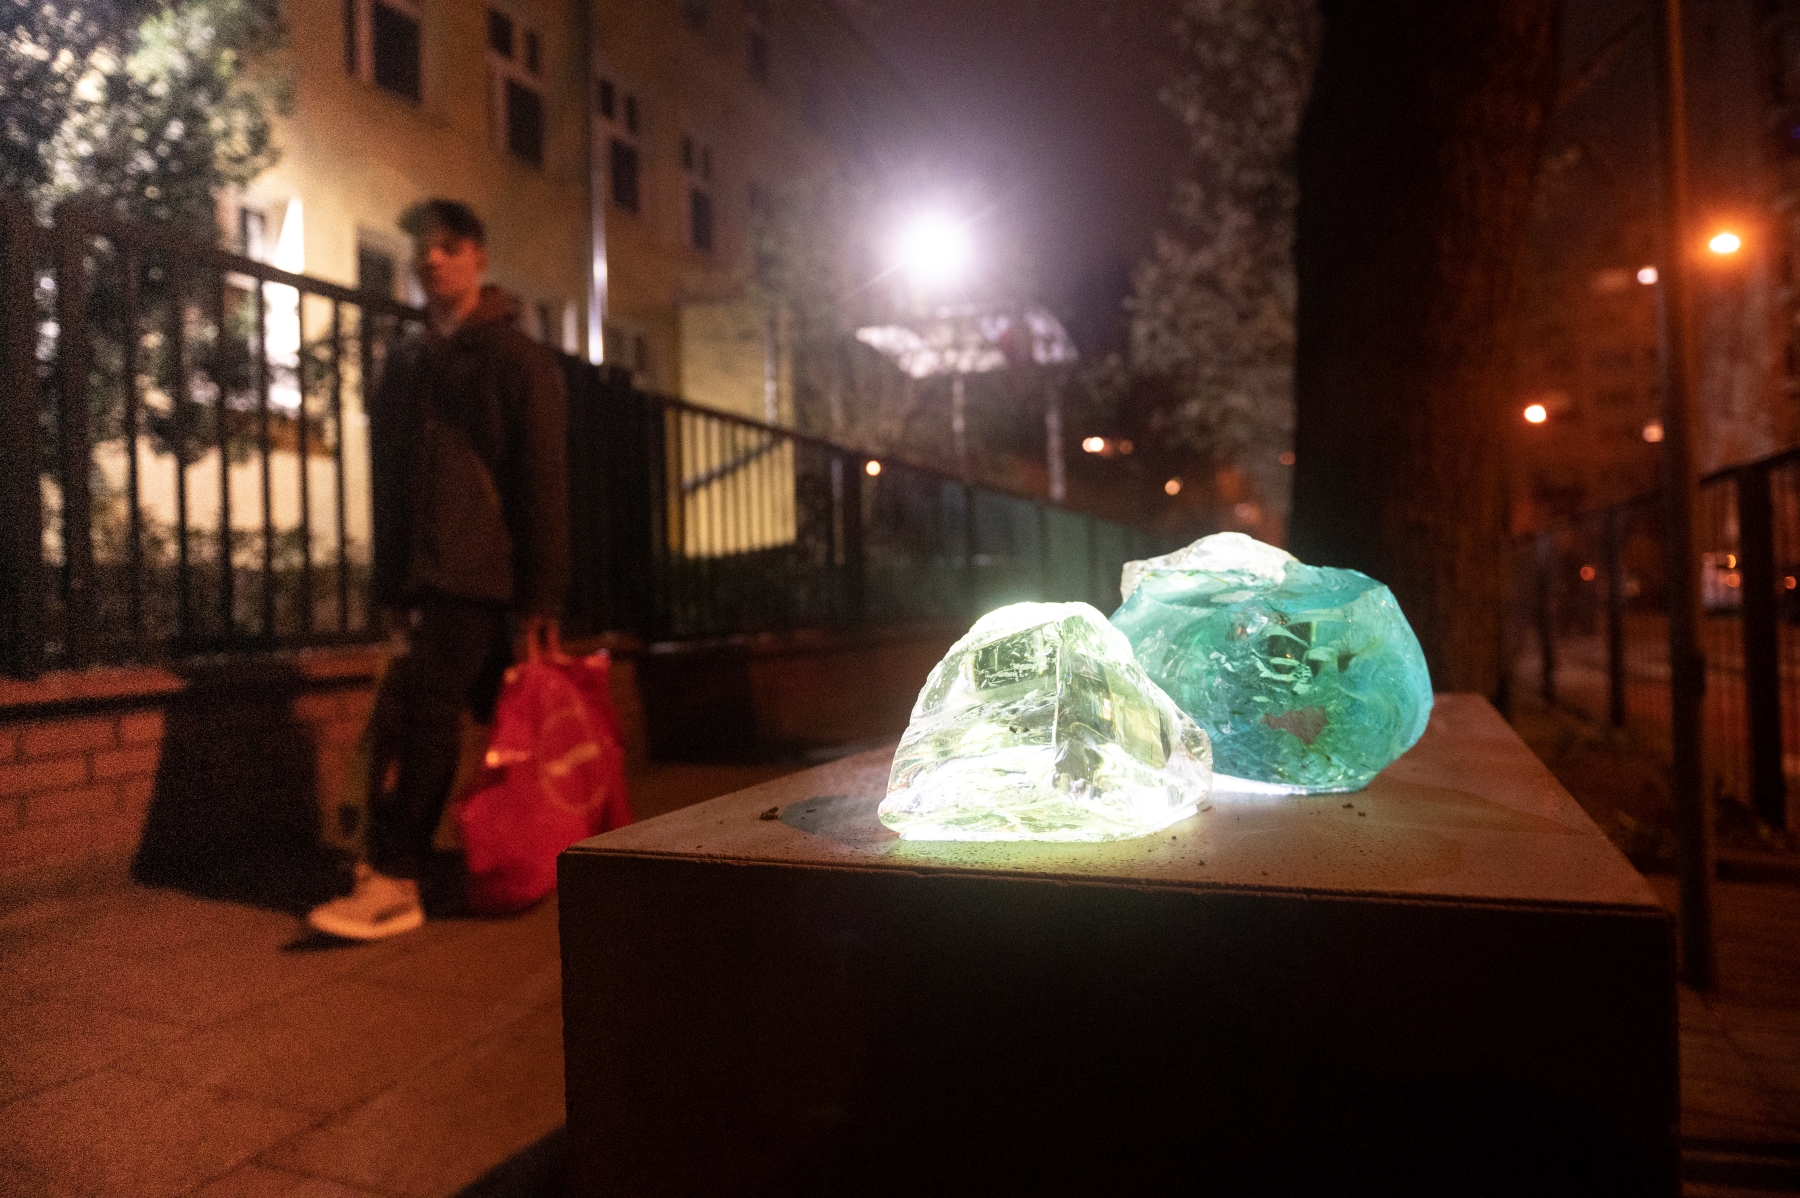 Na postumencie przymocowane dwa świecące kamienie - biały i zielony - symbolizujące kryjówki getta warszawskiego.